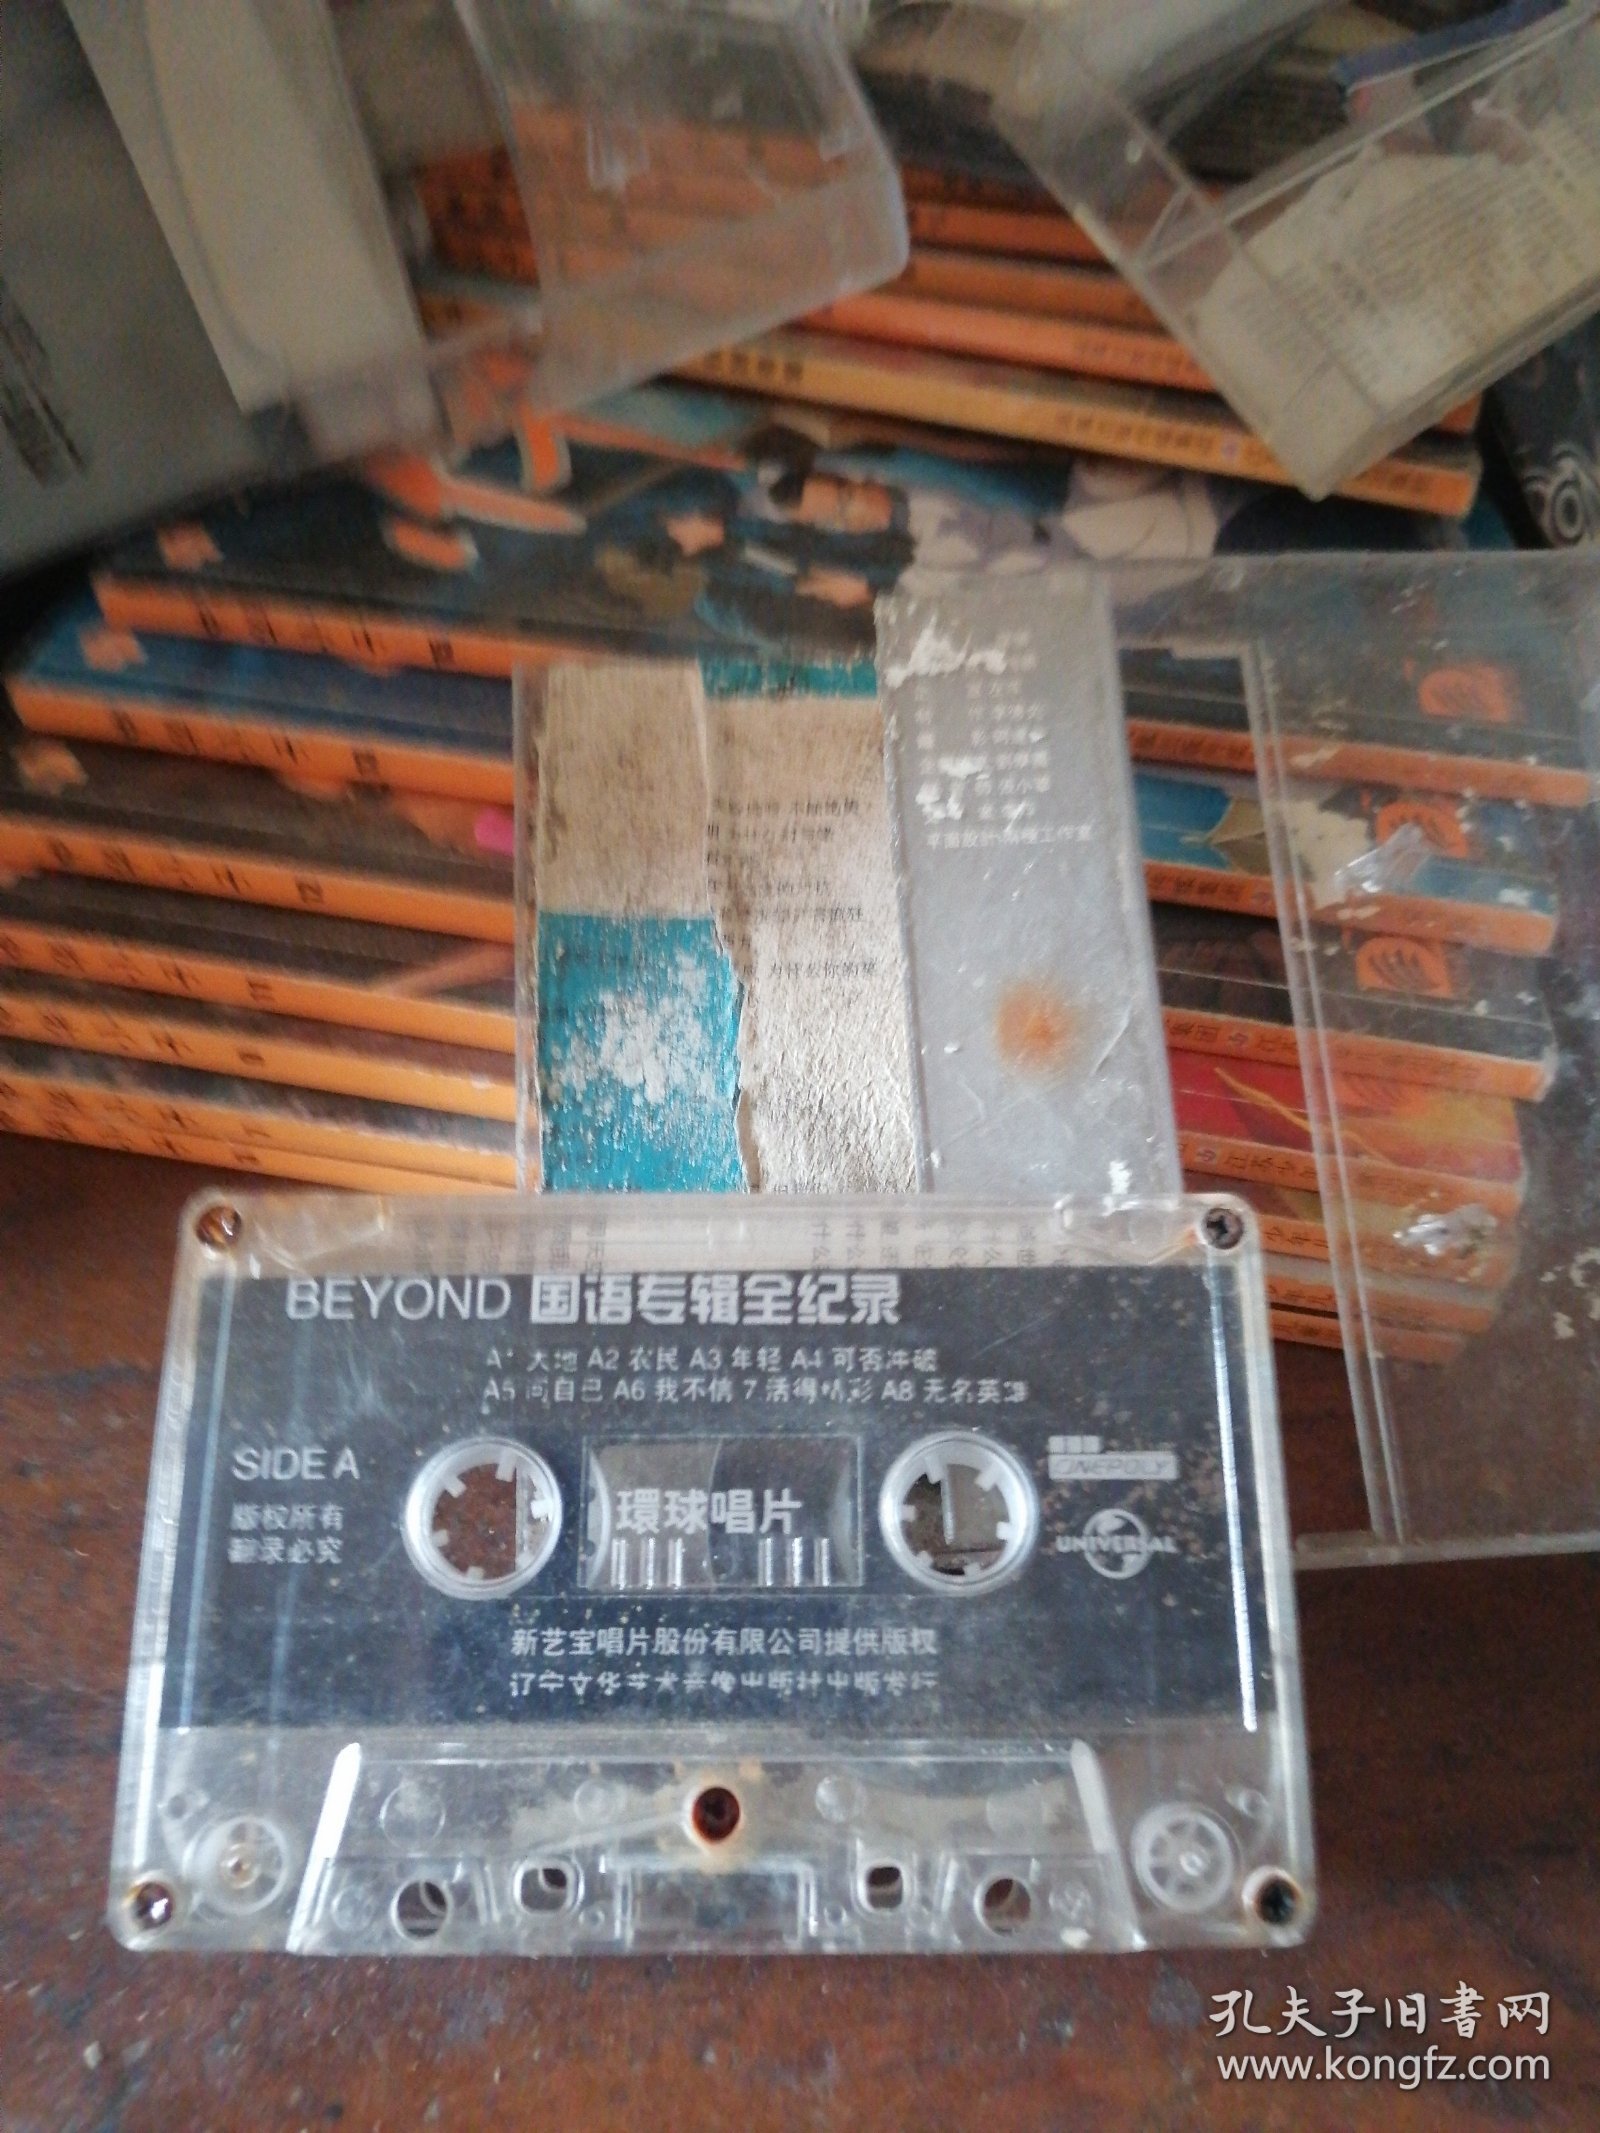 BEYND磁带.国语专辑全记录